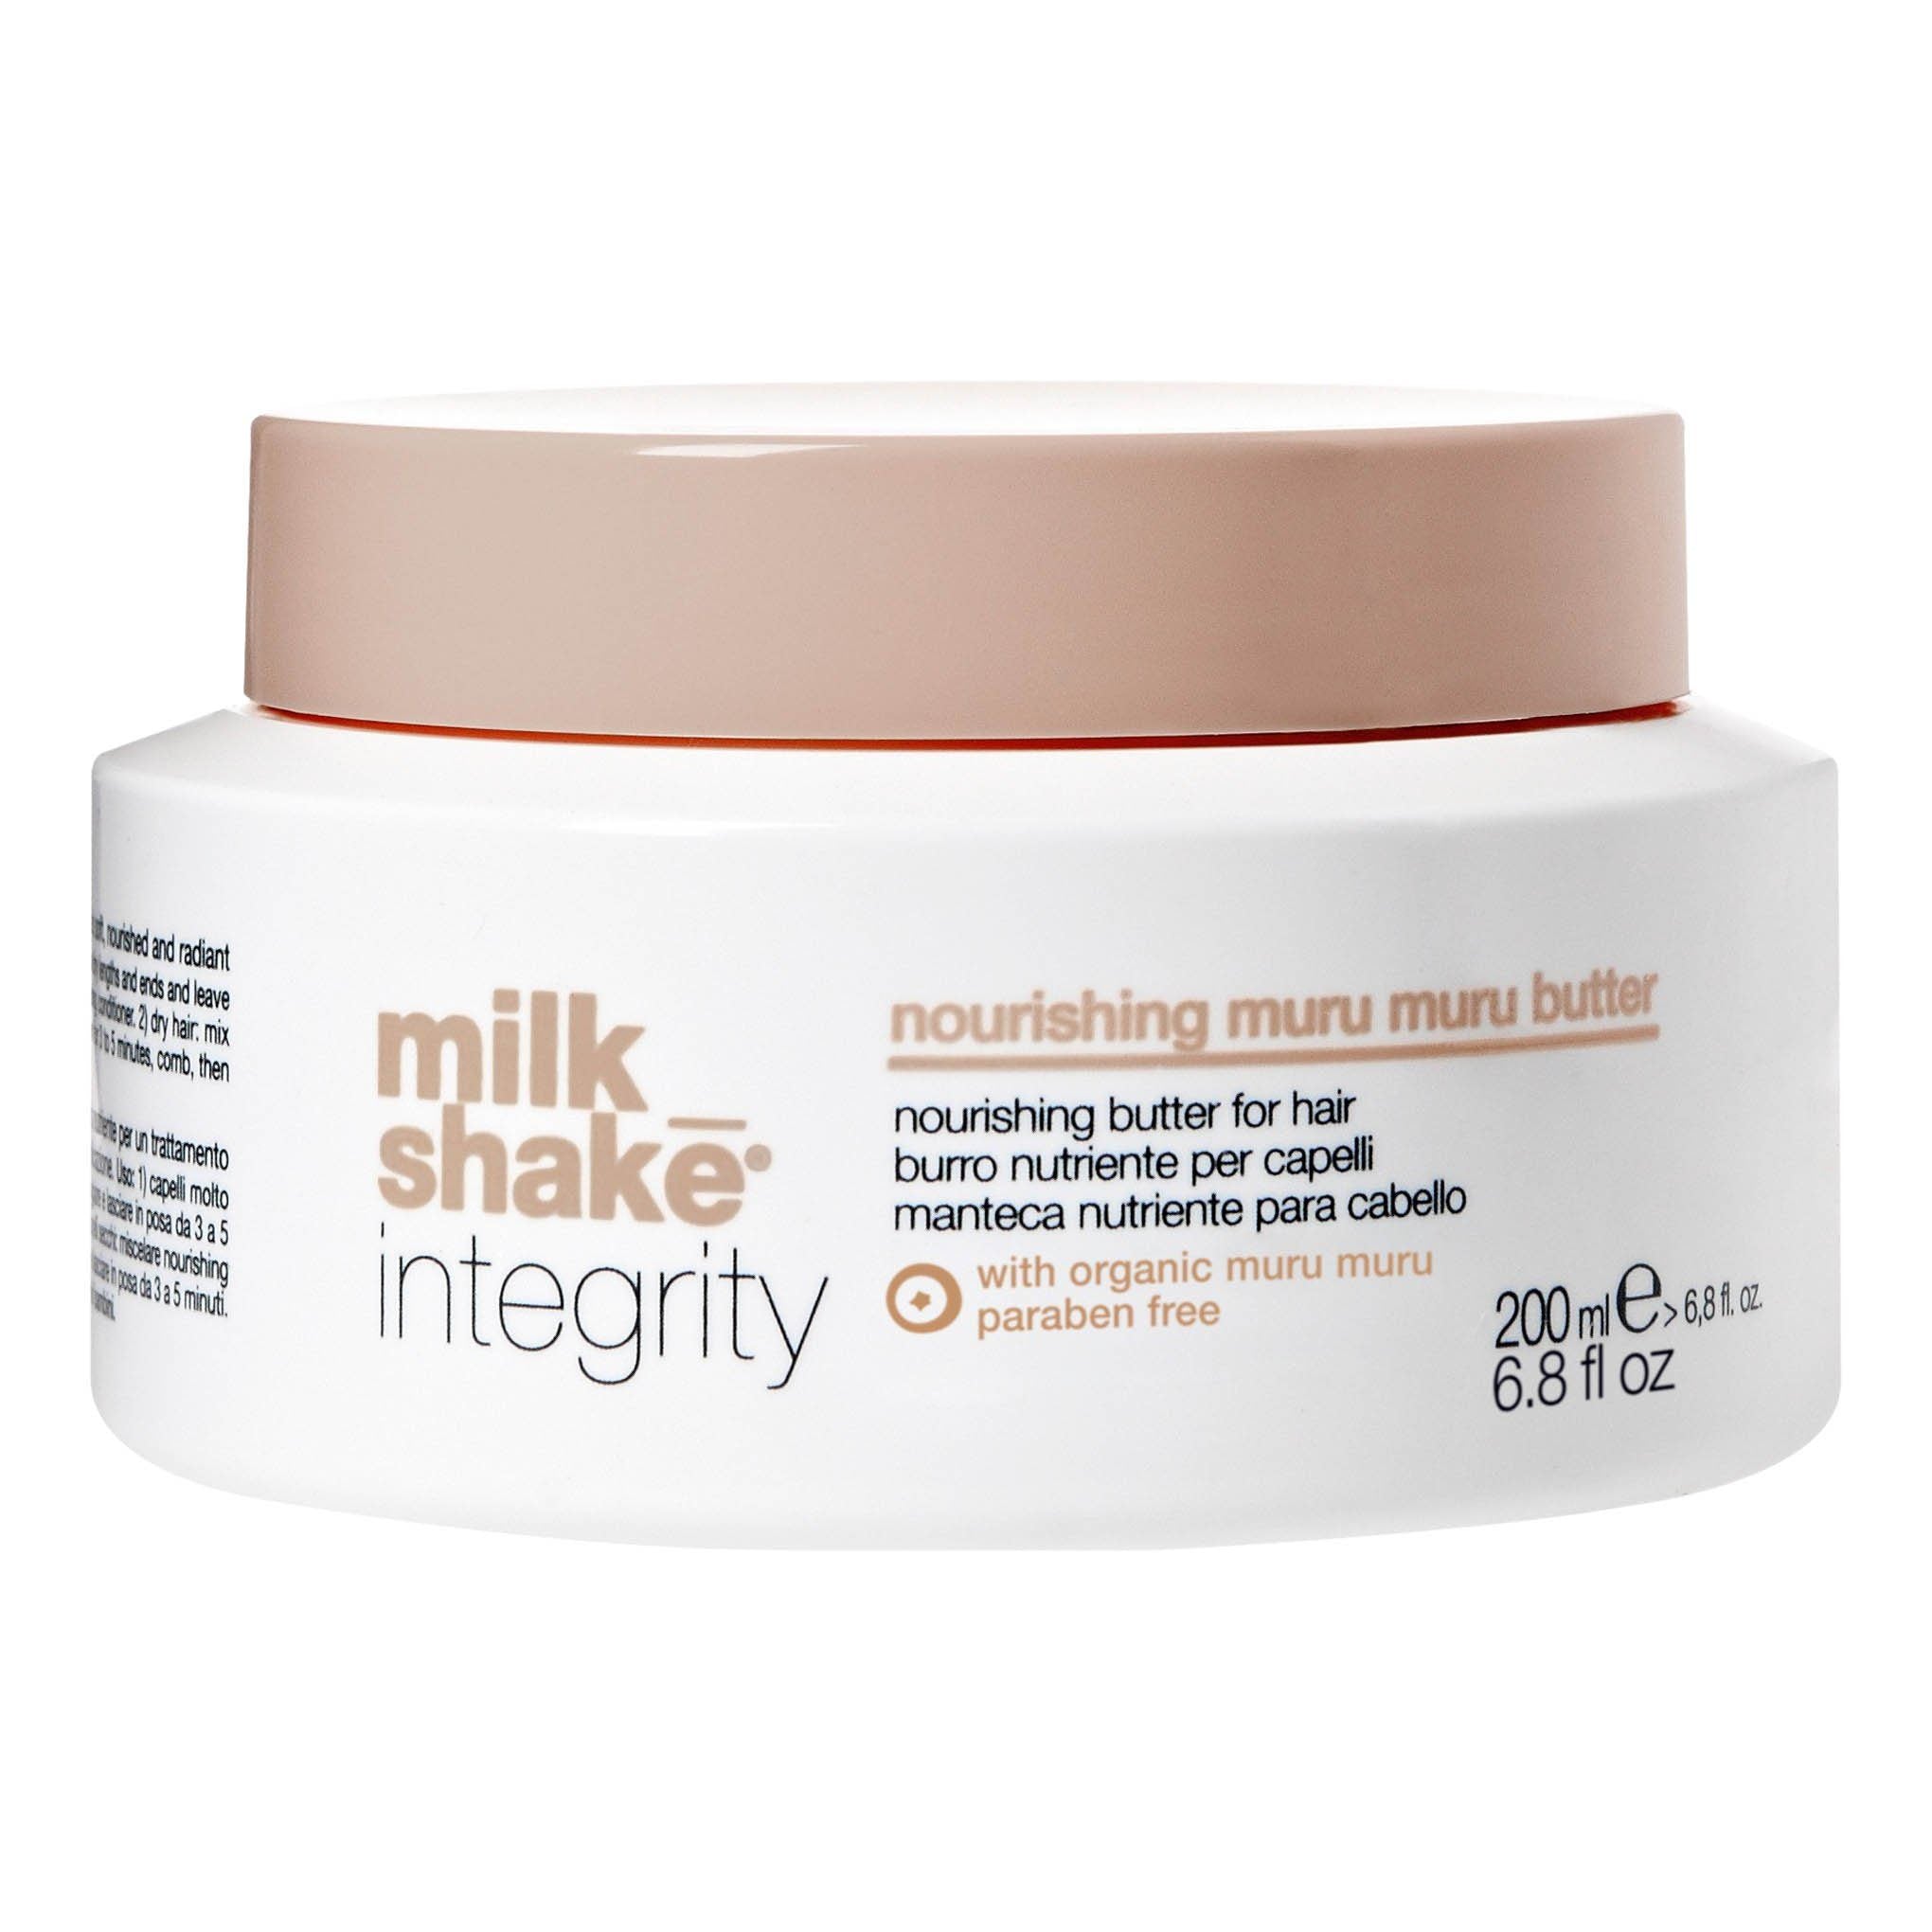 Milk_shake Integrity Nourishing Muru Muru Butter New 200 Ml